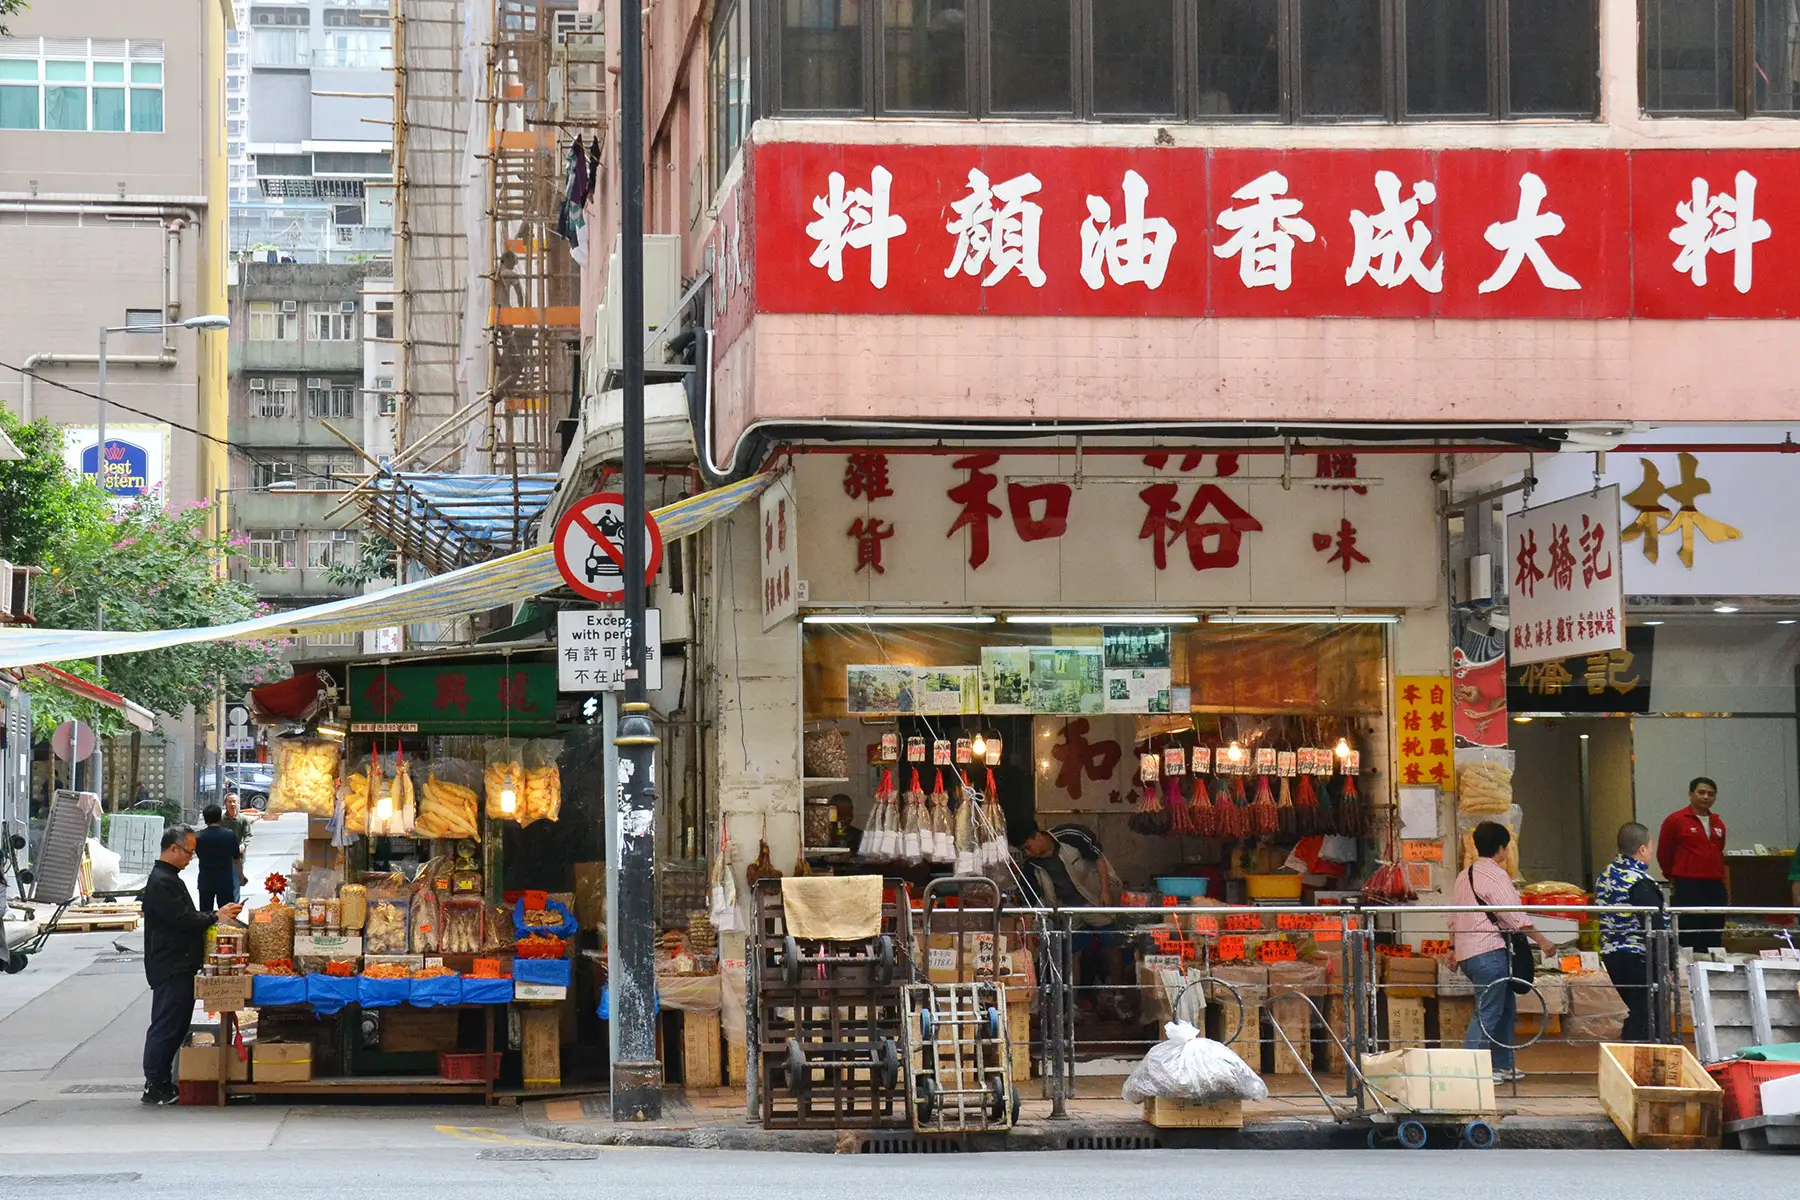 Cantonese sign at a shop in Hong Kong